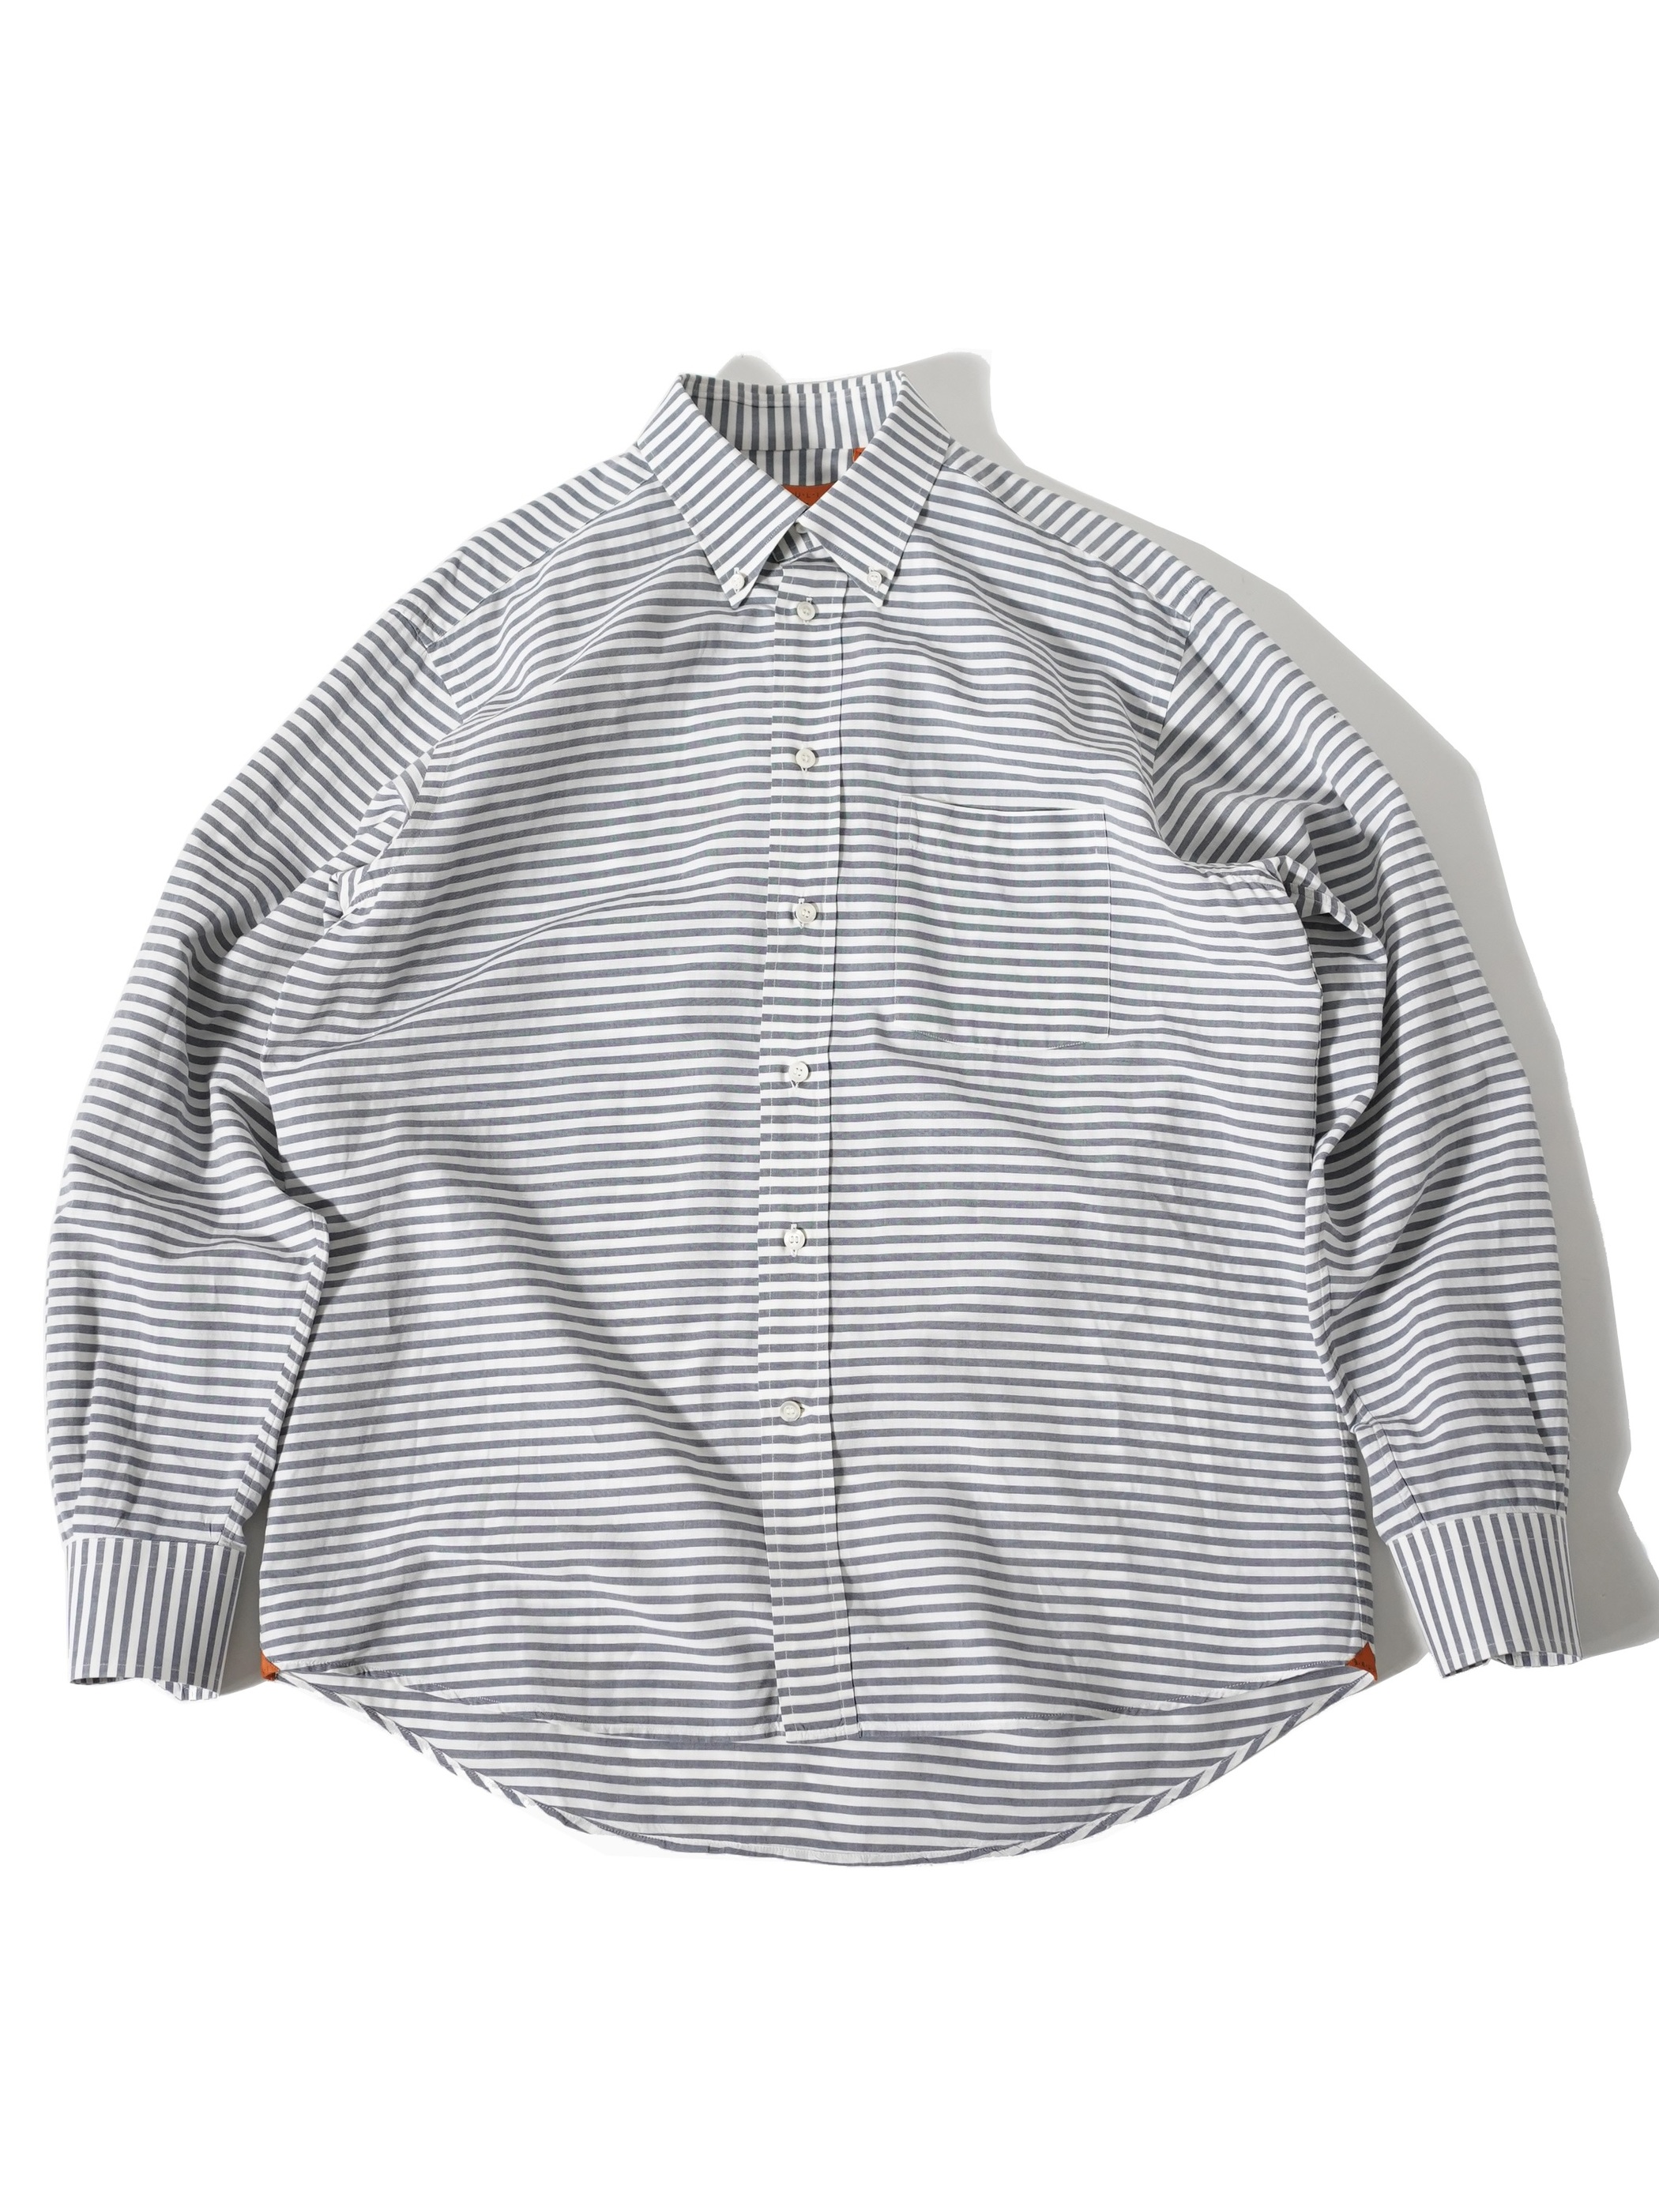 BRULI B.D Cotton Linen shirts / Swiss Made 